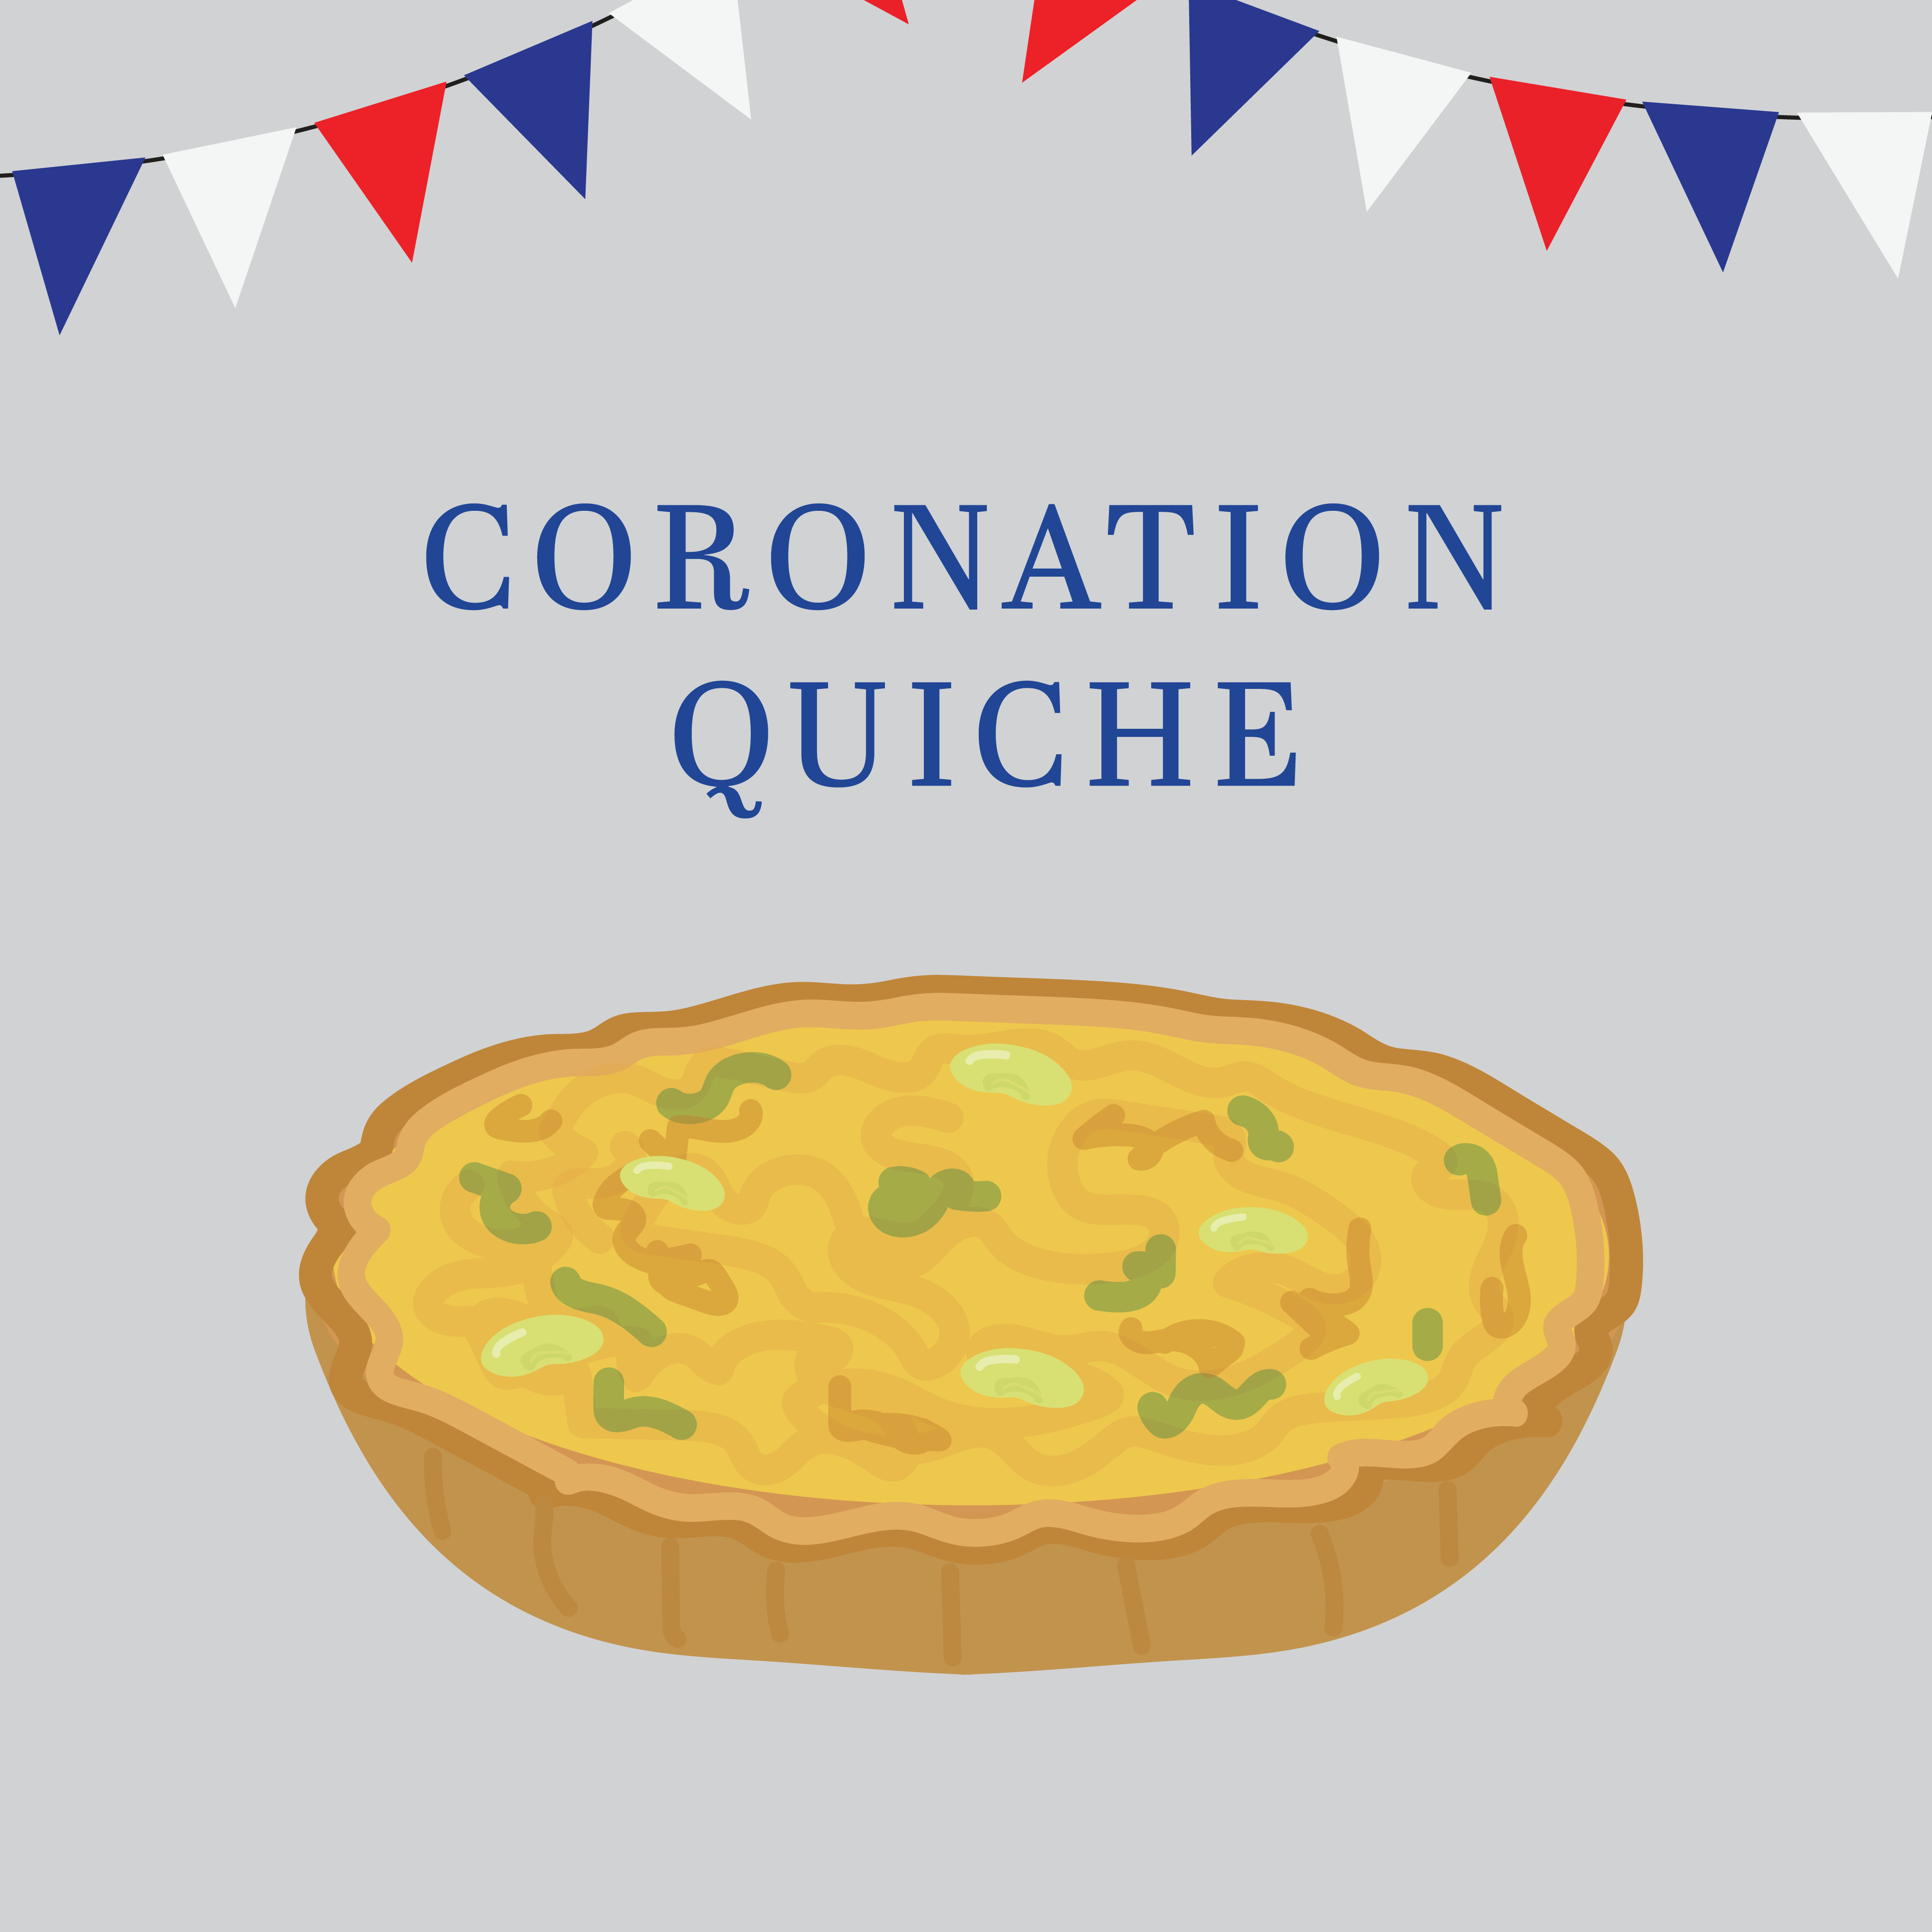 Coronation quiche